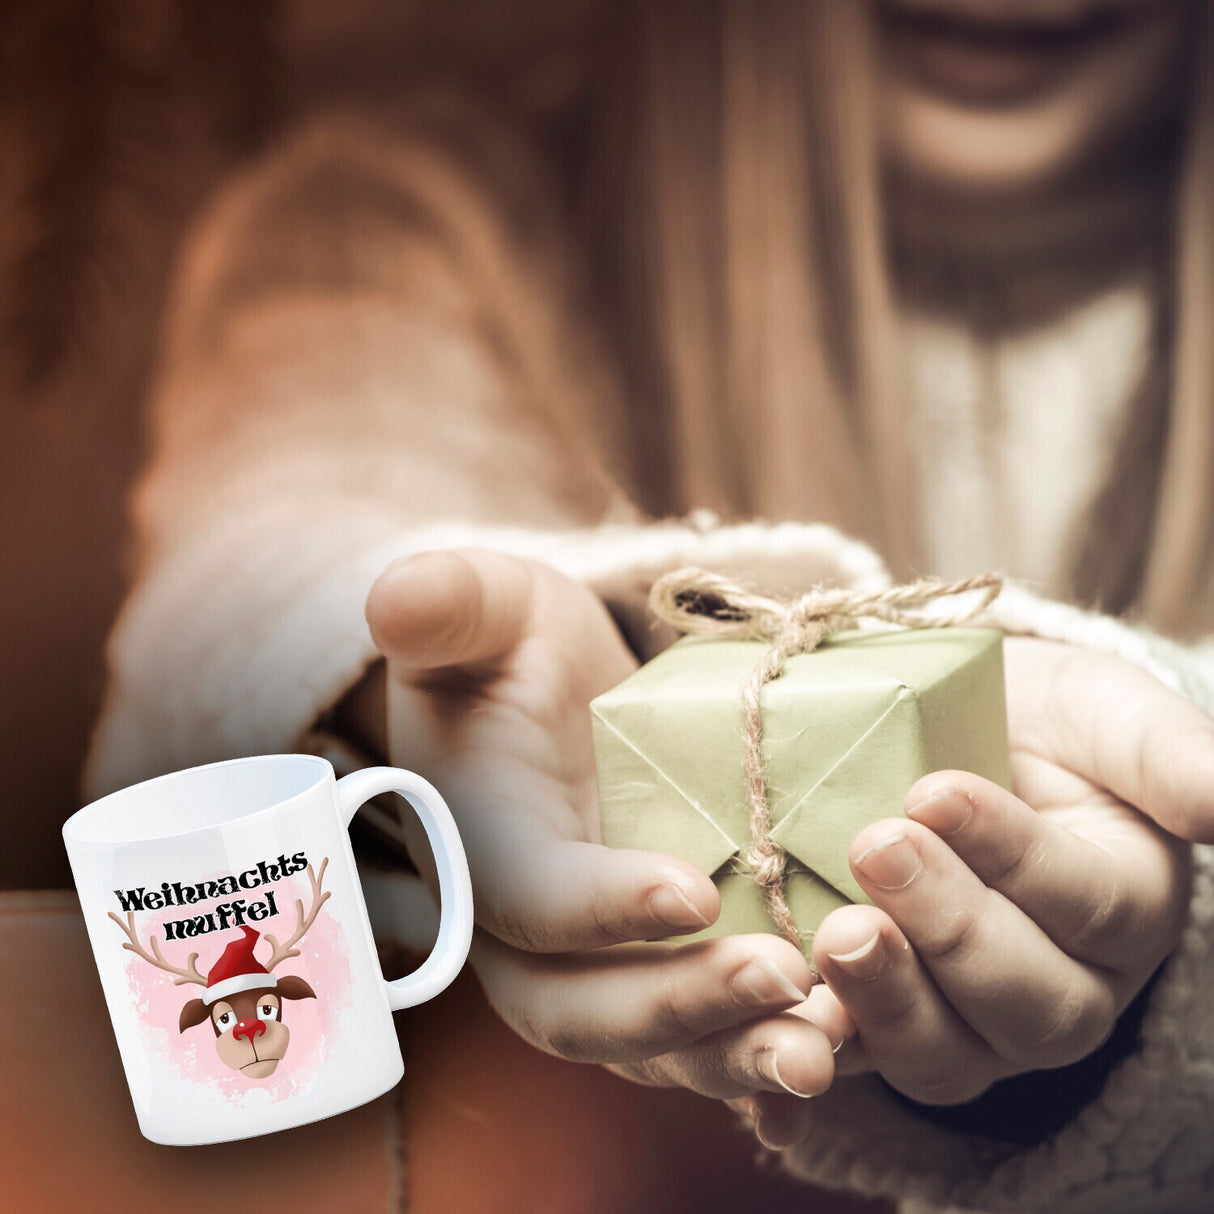 Weihnachtsmuffel witzige Kaffeetasse mit lustlosem Rentier Motiv